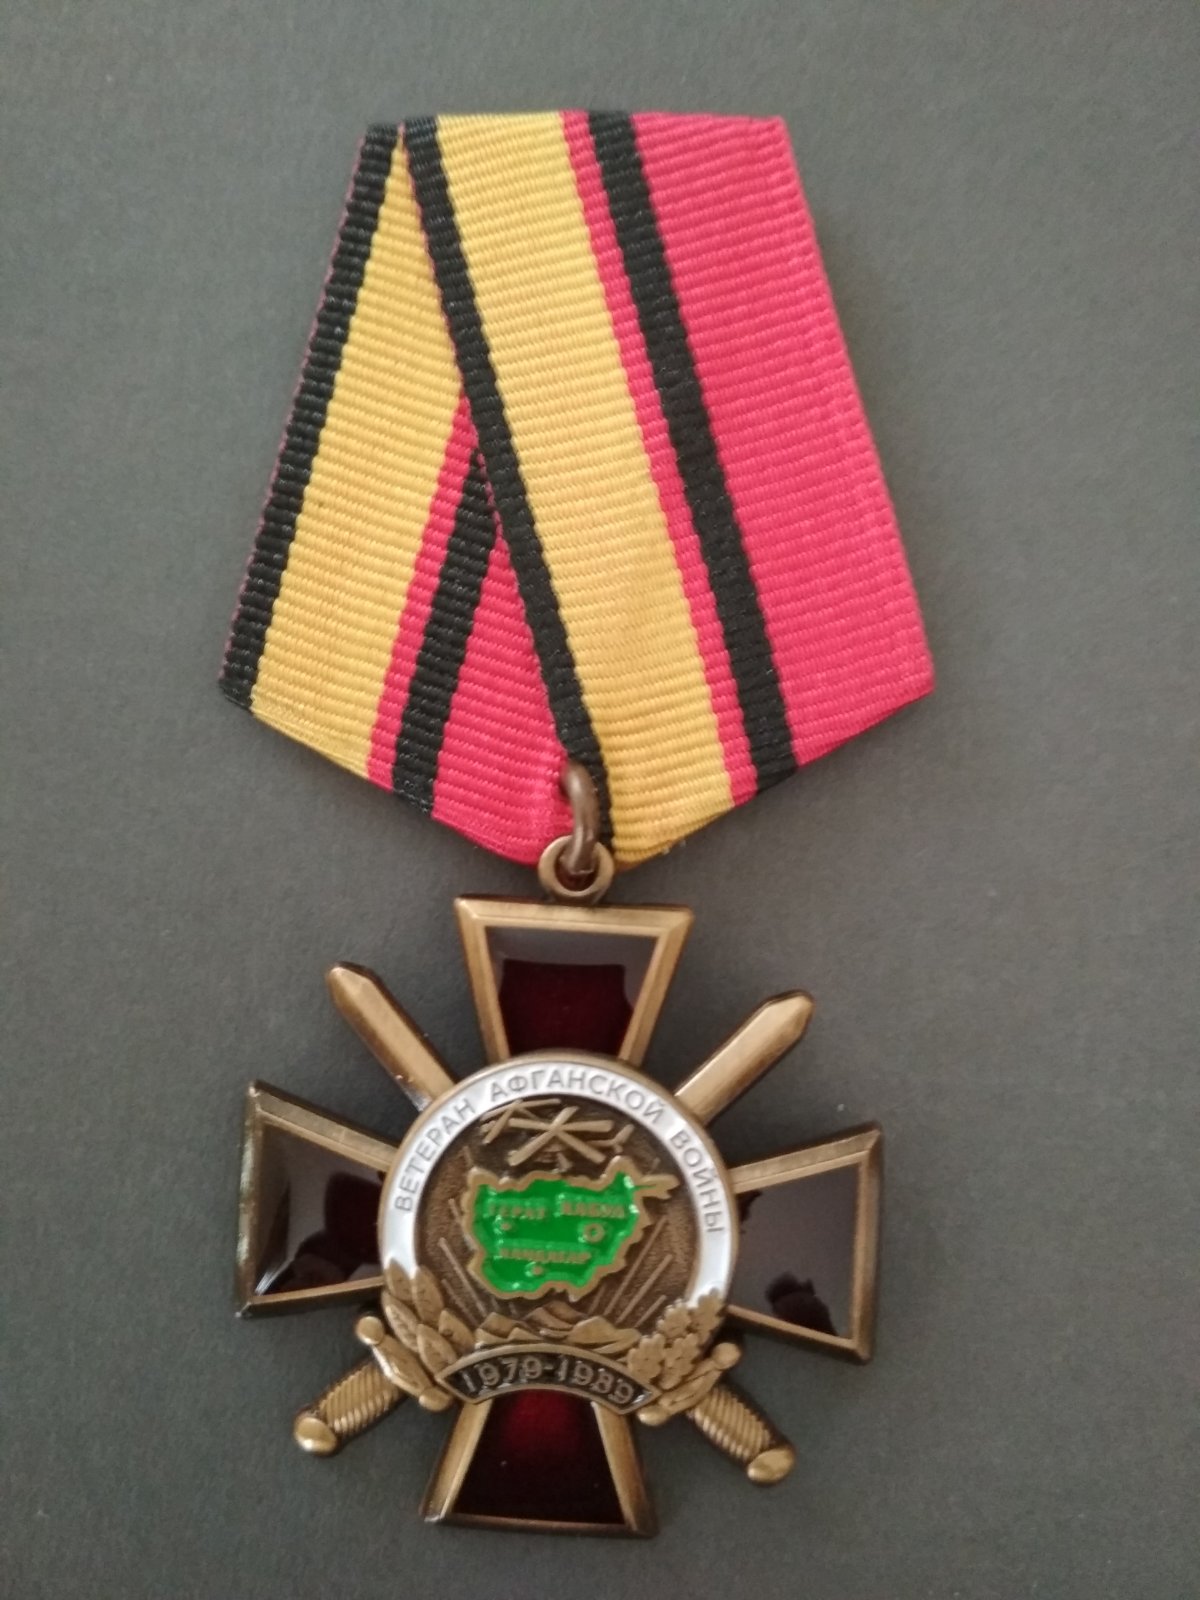 Медаль "Ветеран афганской войны". Крест, мечи, карта Афганистана.